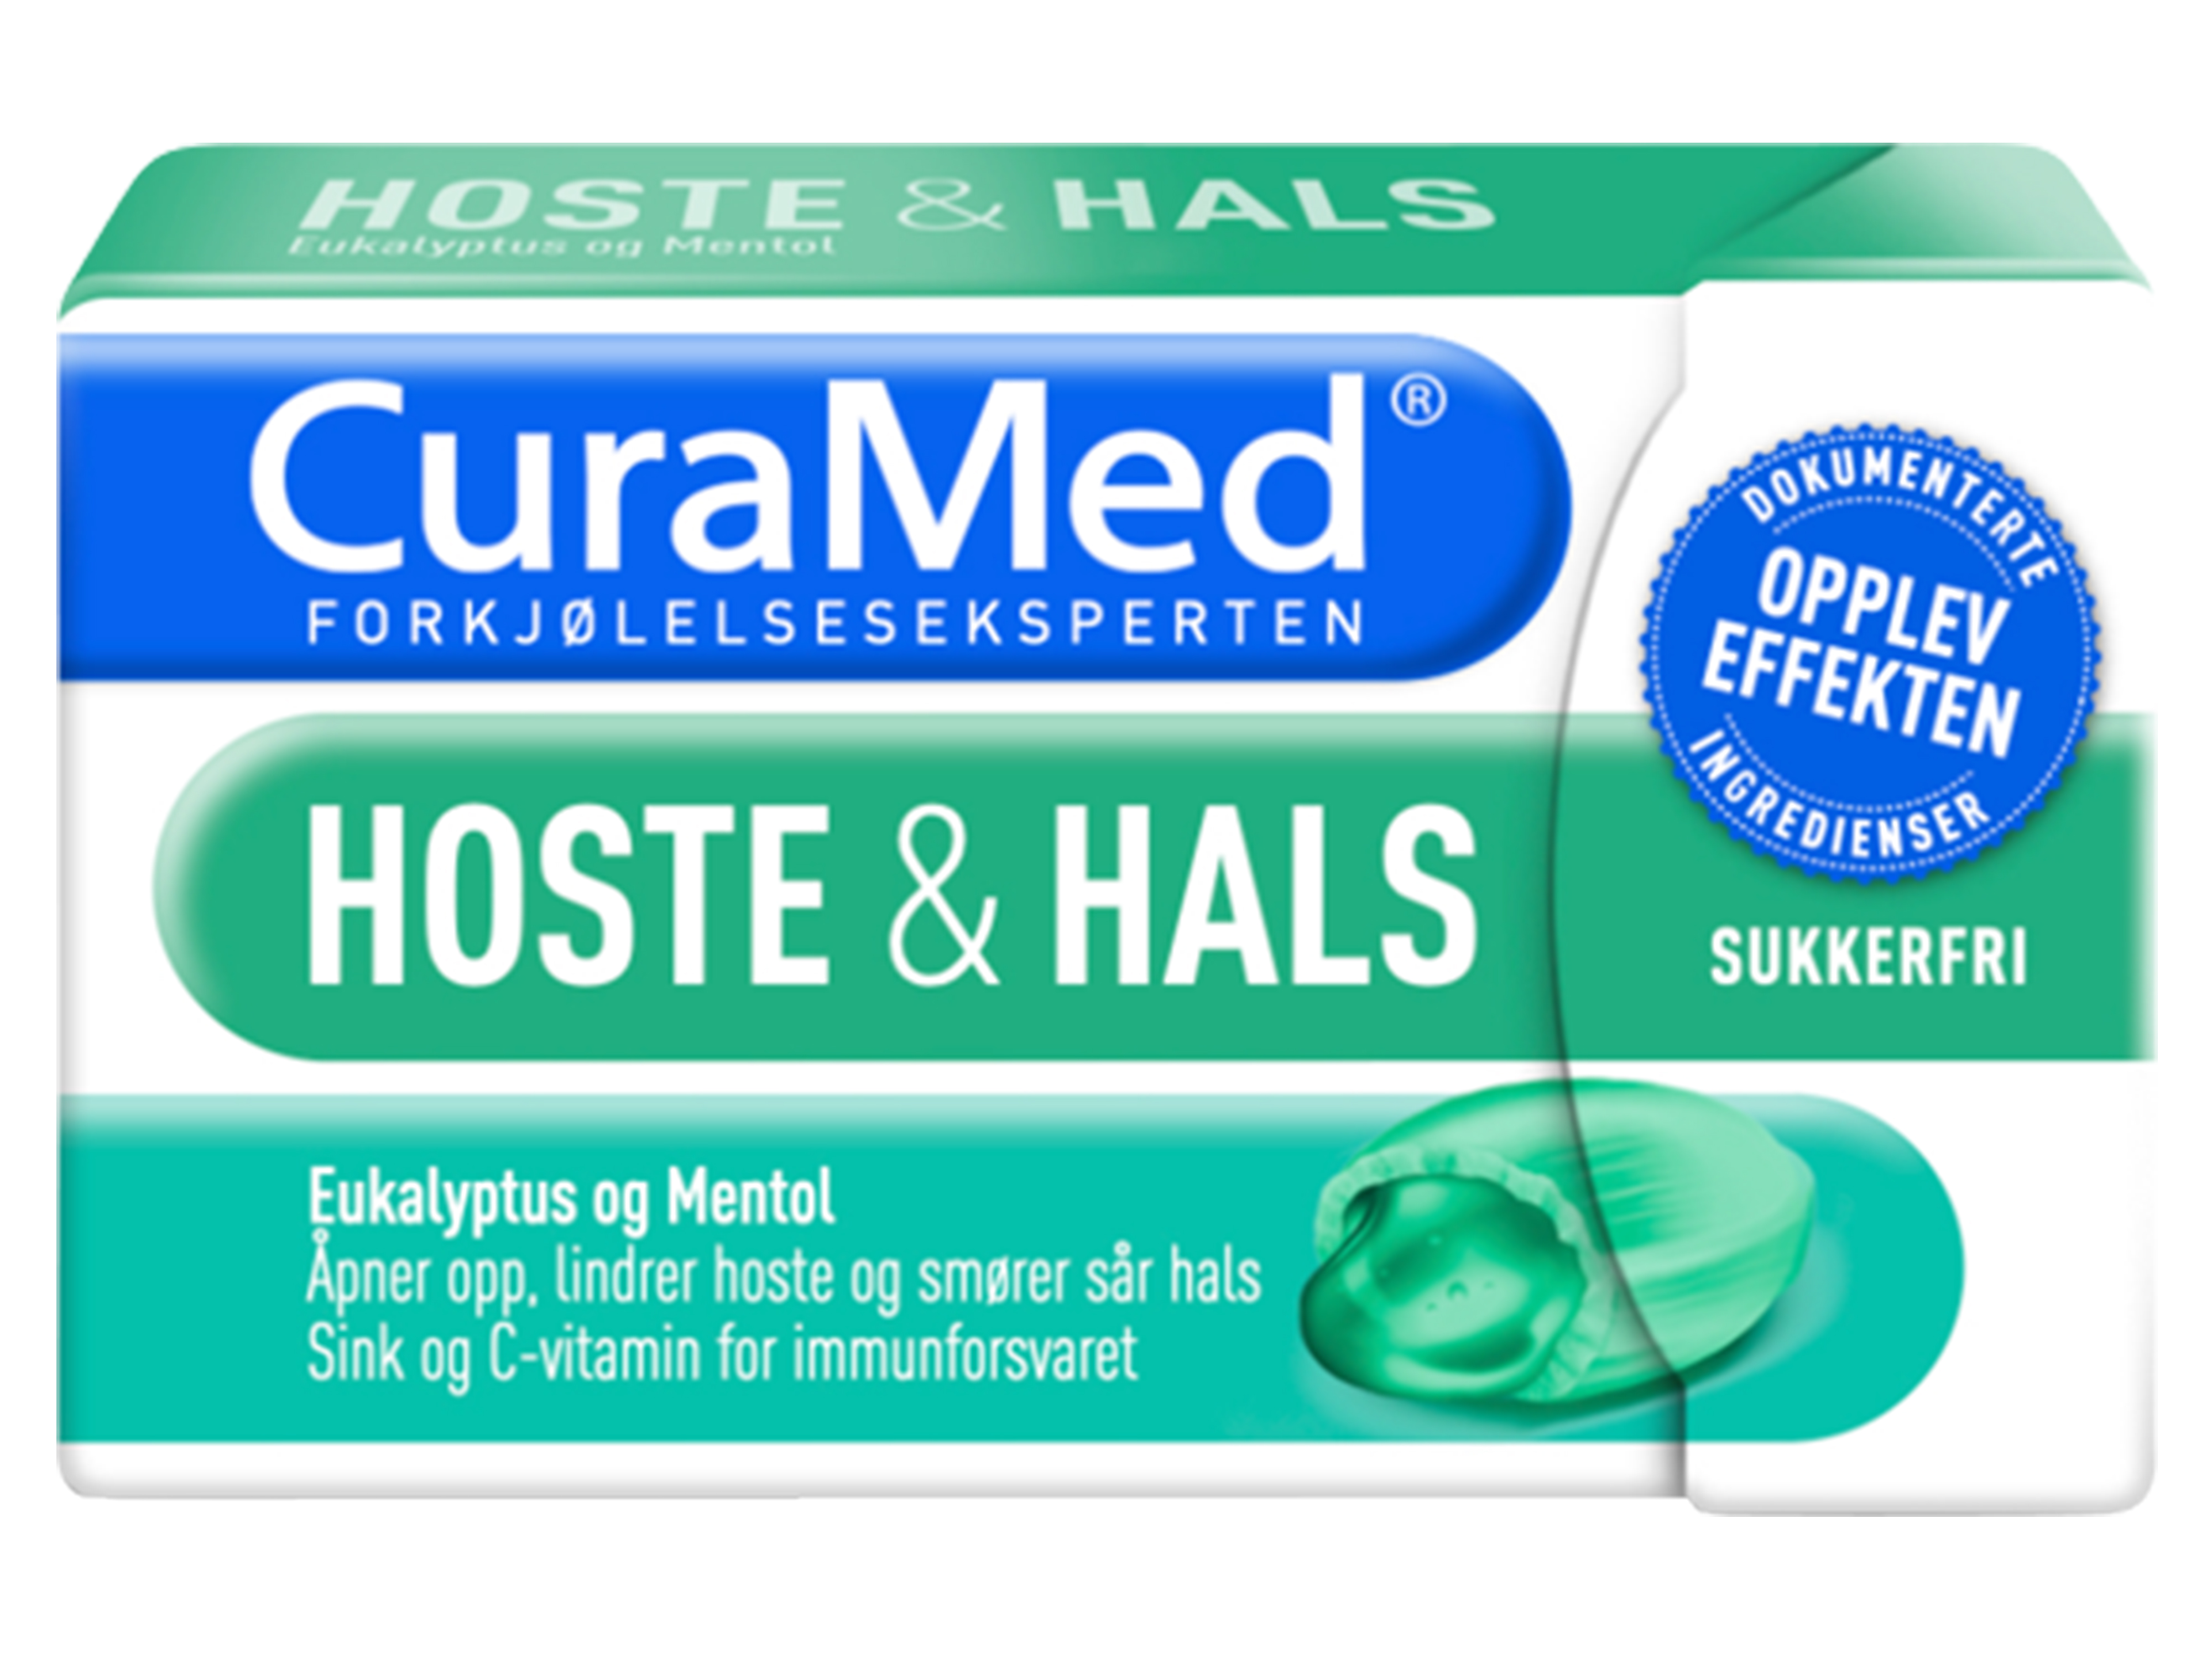 Curamed Hoste & Hals Eukalyptus & Mentol, 16 pastiller